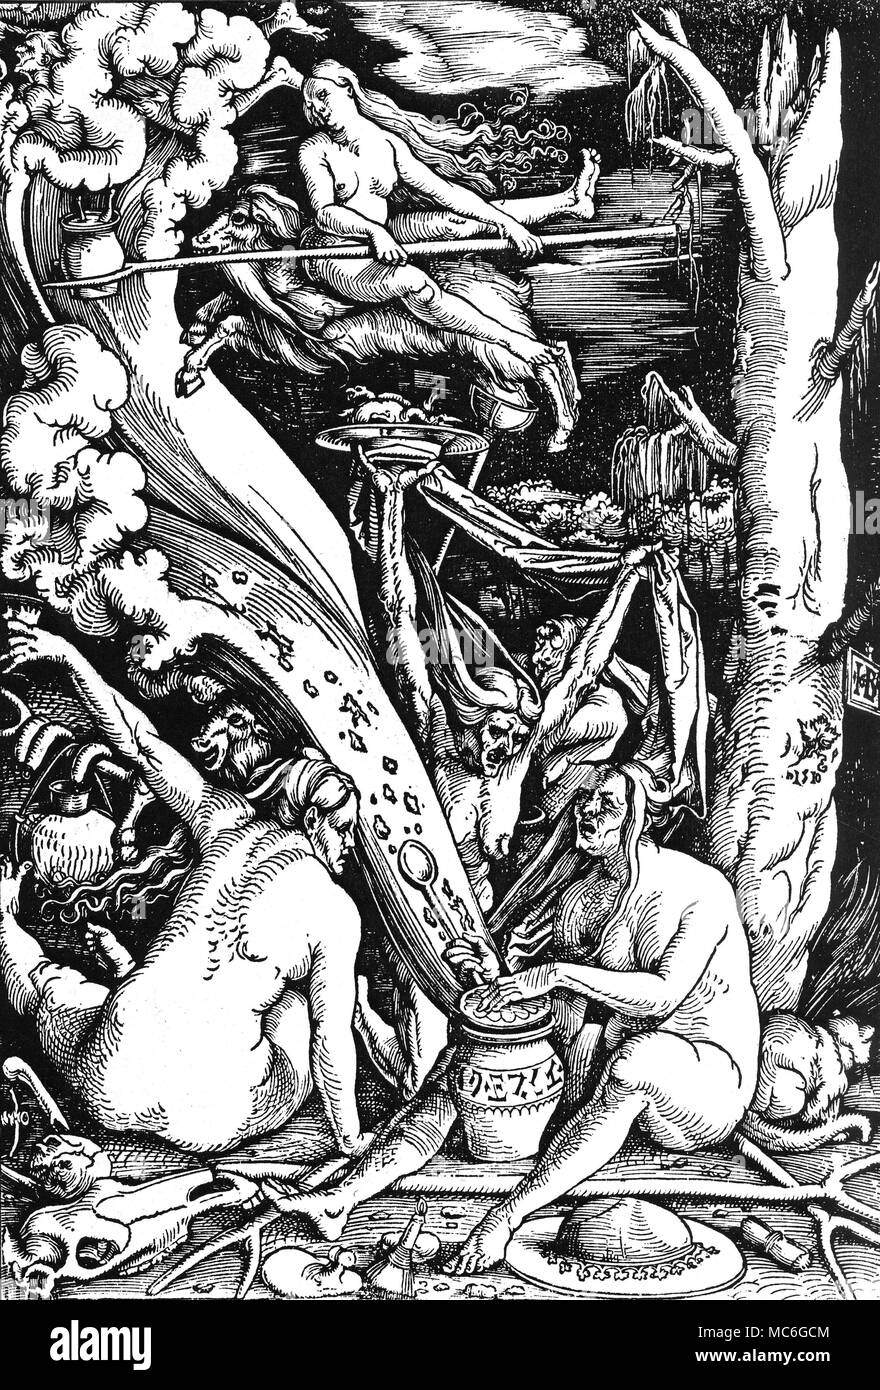 Hexerei - TRANSVECTING Hexen die Hexen' - Holzschnitt von Hans Baldung Grien, 1510. Zwei Hexen sind transvecting - eine scheinbar auf einer Wolke, die andere auf dem Rücken einer Ziege (was sicherlich ein Teufel in der Verkleidung). Die Hexe im Vordergrund (rechts) ist eine Hexe-jar, aus dem Stream alle Arten des Bösen; das Glas wird mit hebräischen eingeschrieben - wie Buchstaben und verwies auf die Tatsache, dass Juden wenig mehr als Hexen angesehen wurden, im frühen 16. Jahrhundert. Hinter diese Hexe ist eine Katze vertraut. In der unmittelbaren Vordergrund ist ein magischer Spiegel, oder T-Spiegel, in der f Stockfoto